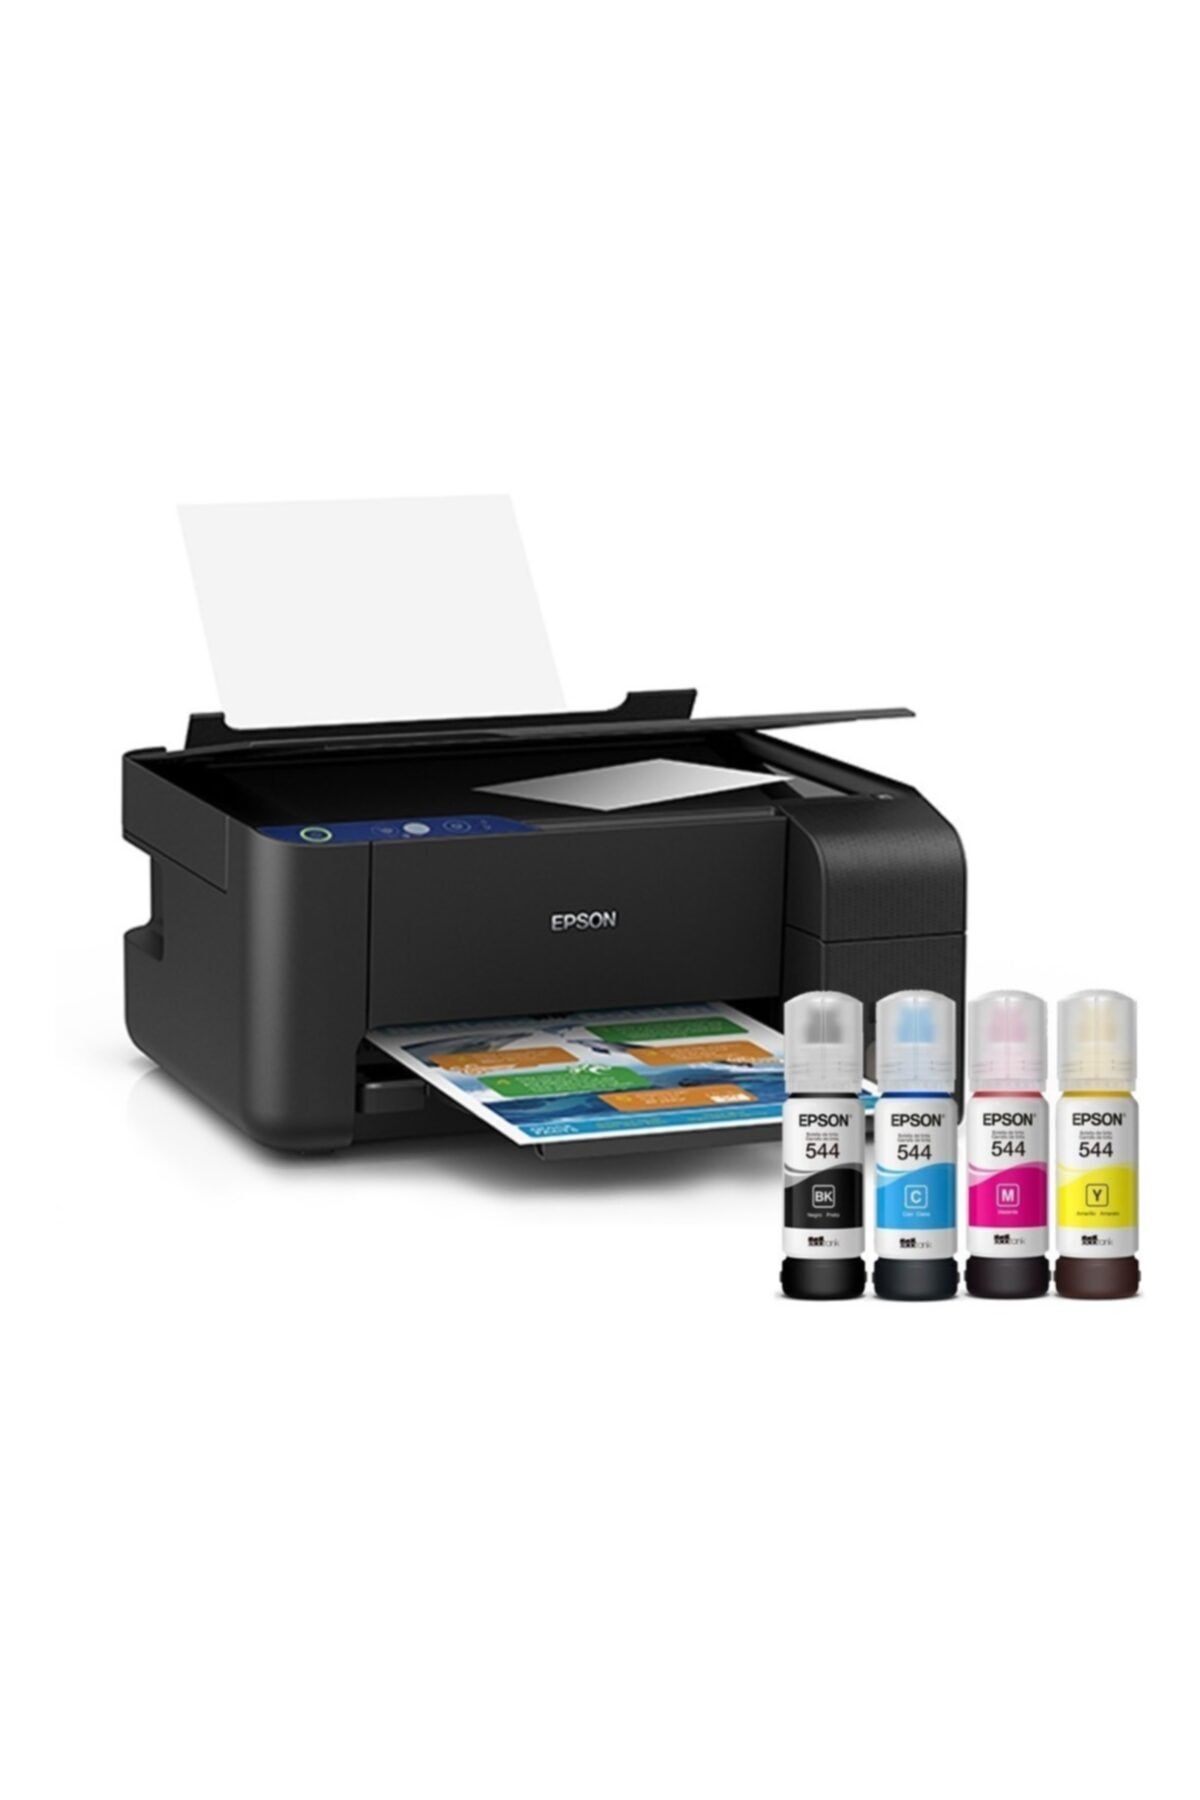 Недорогие принтеры для печати. Epson l3210. Принтер Эпсон 3210. МФУ Эпсон 3210. Принтер цветной Epson l-3200.